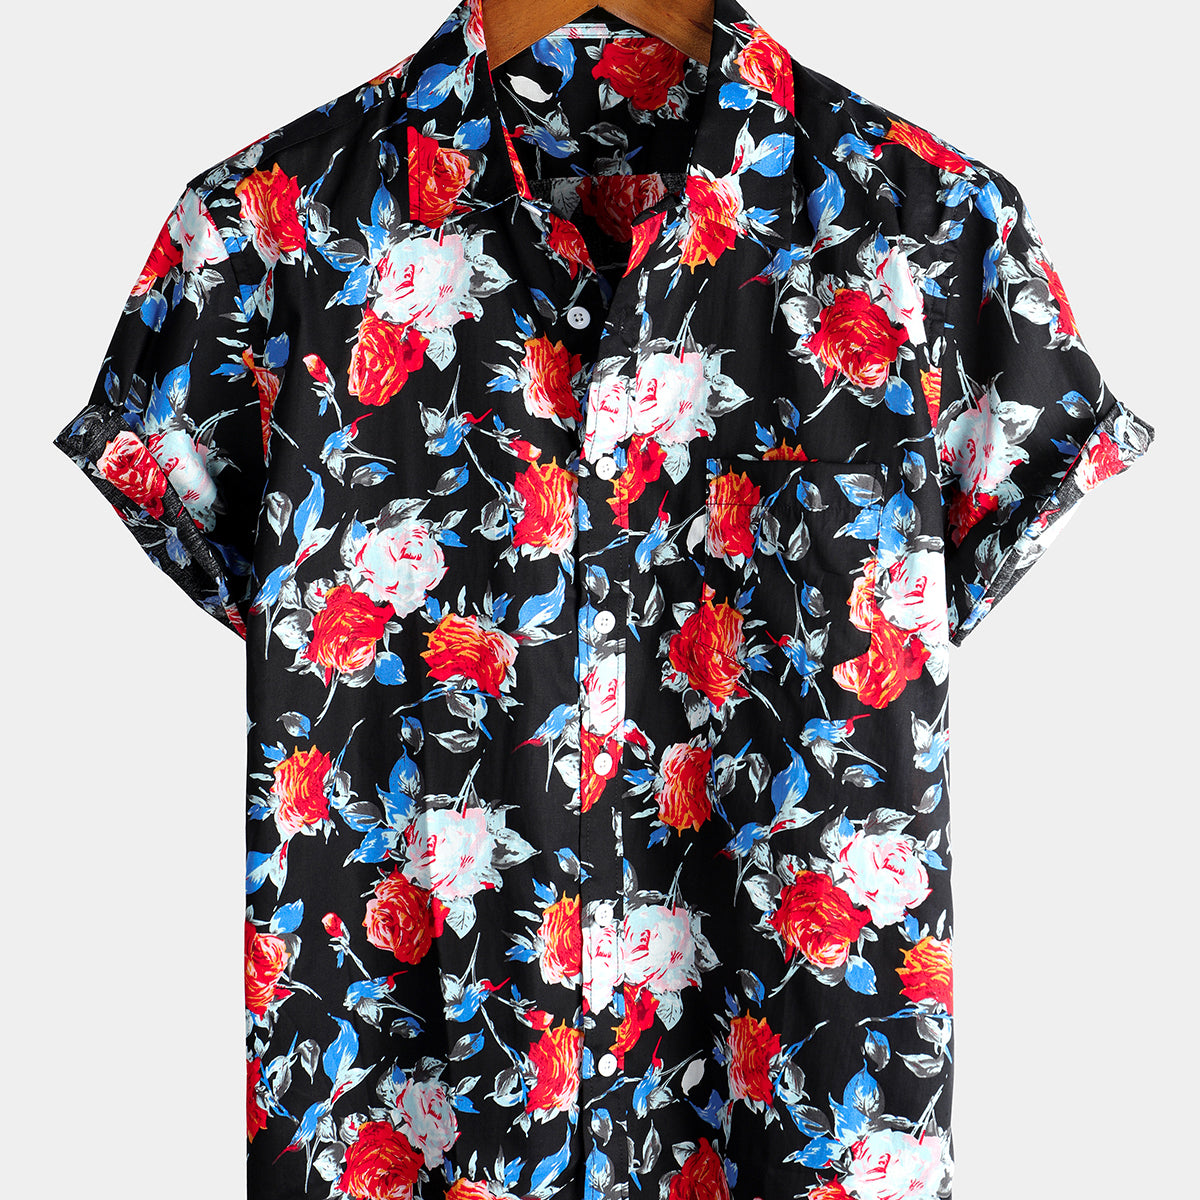 Men's Rose Pocket Black Floral Holiday Cotton Short Sleeve Shirt